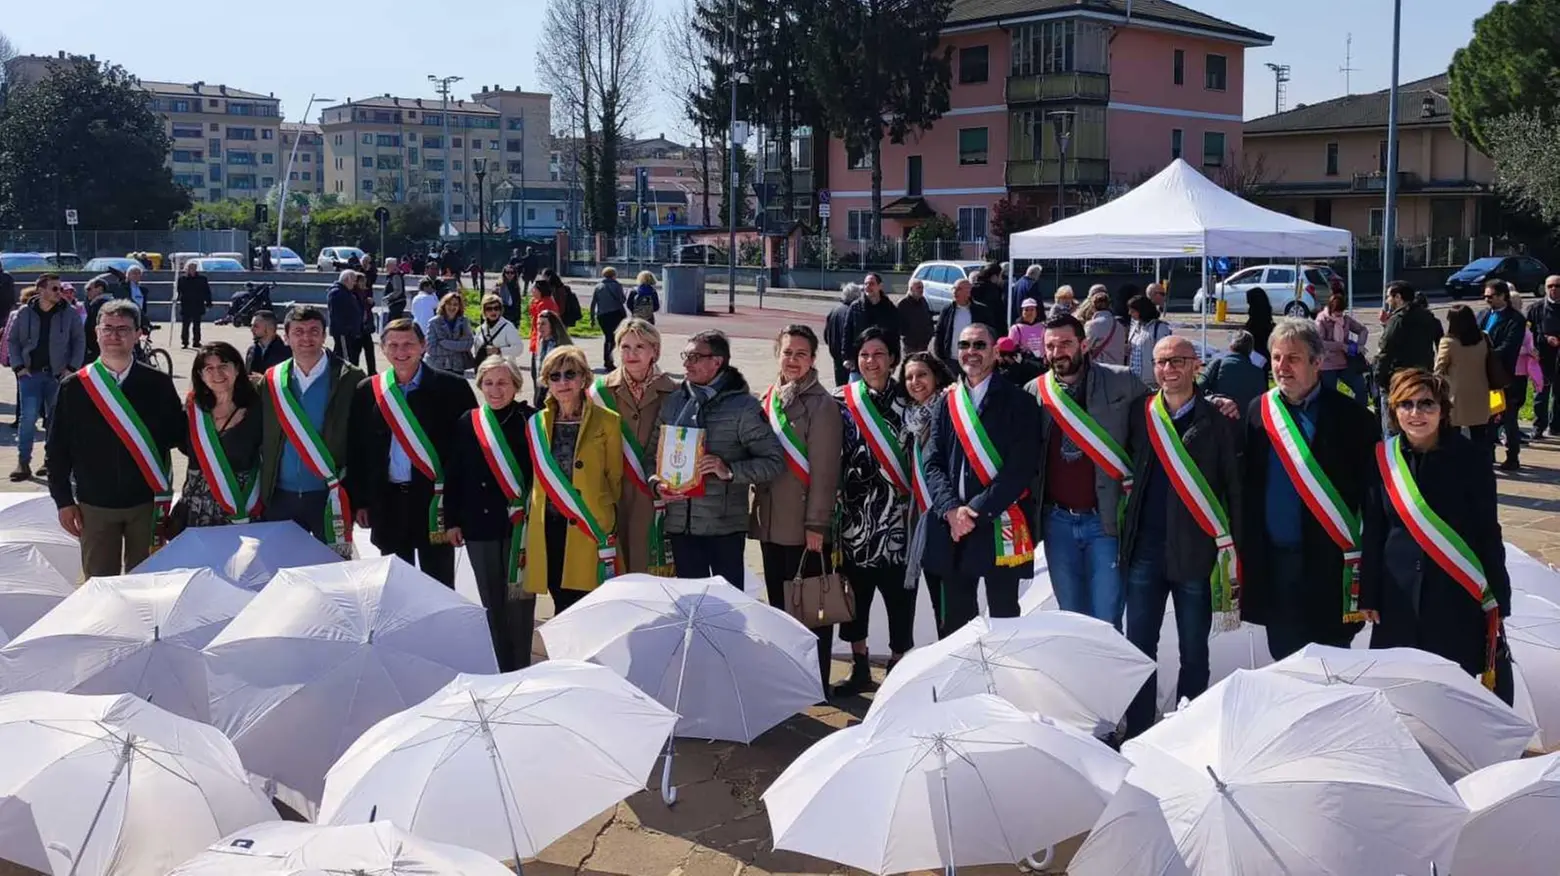 Ombrelli bianchi a Pioltello  Martesana in marcia  per la legalità  "Basta infiltrazioni"